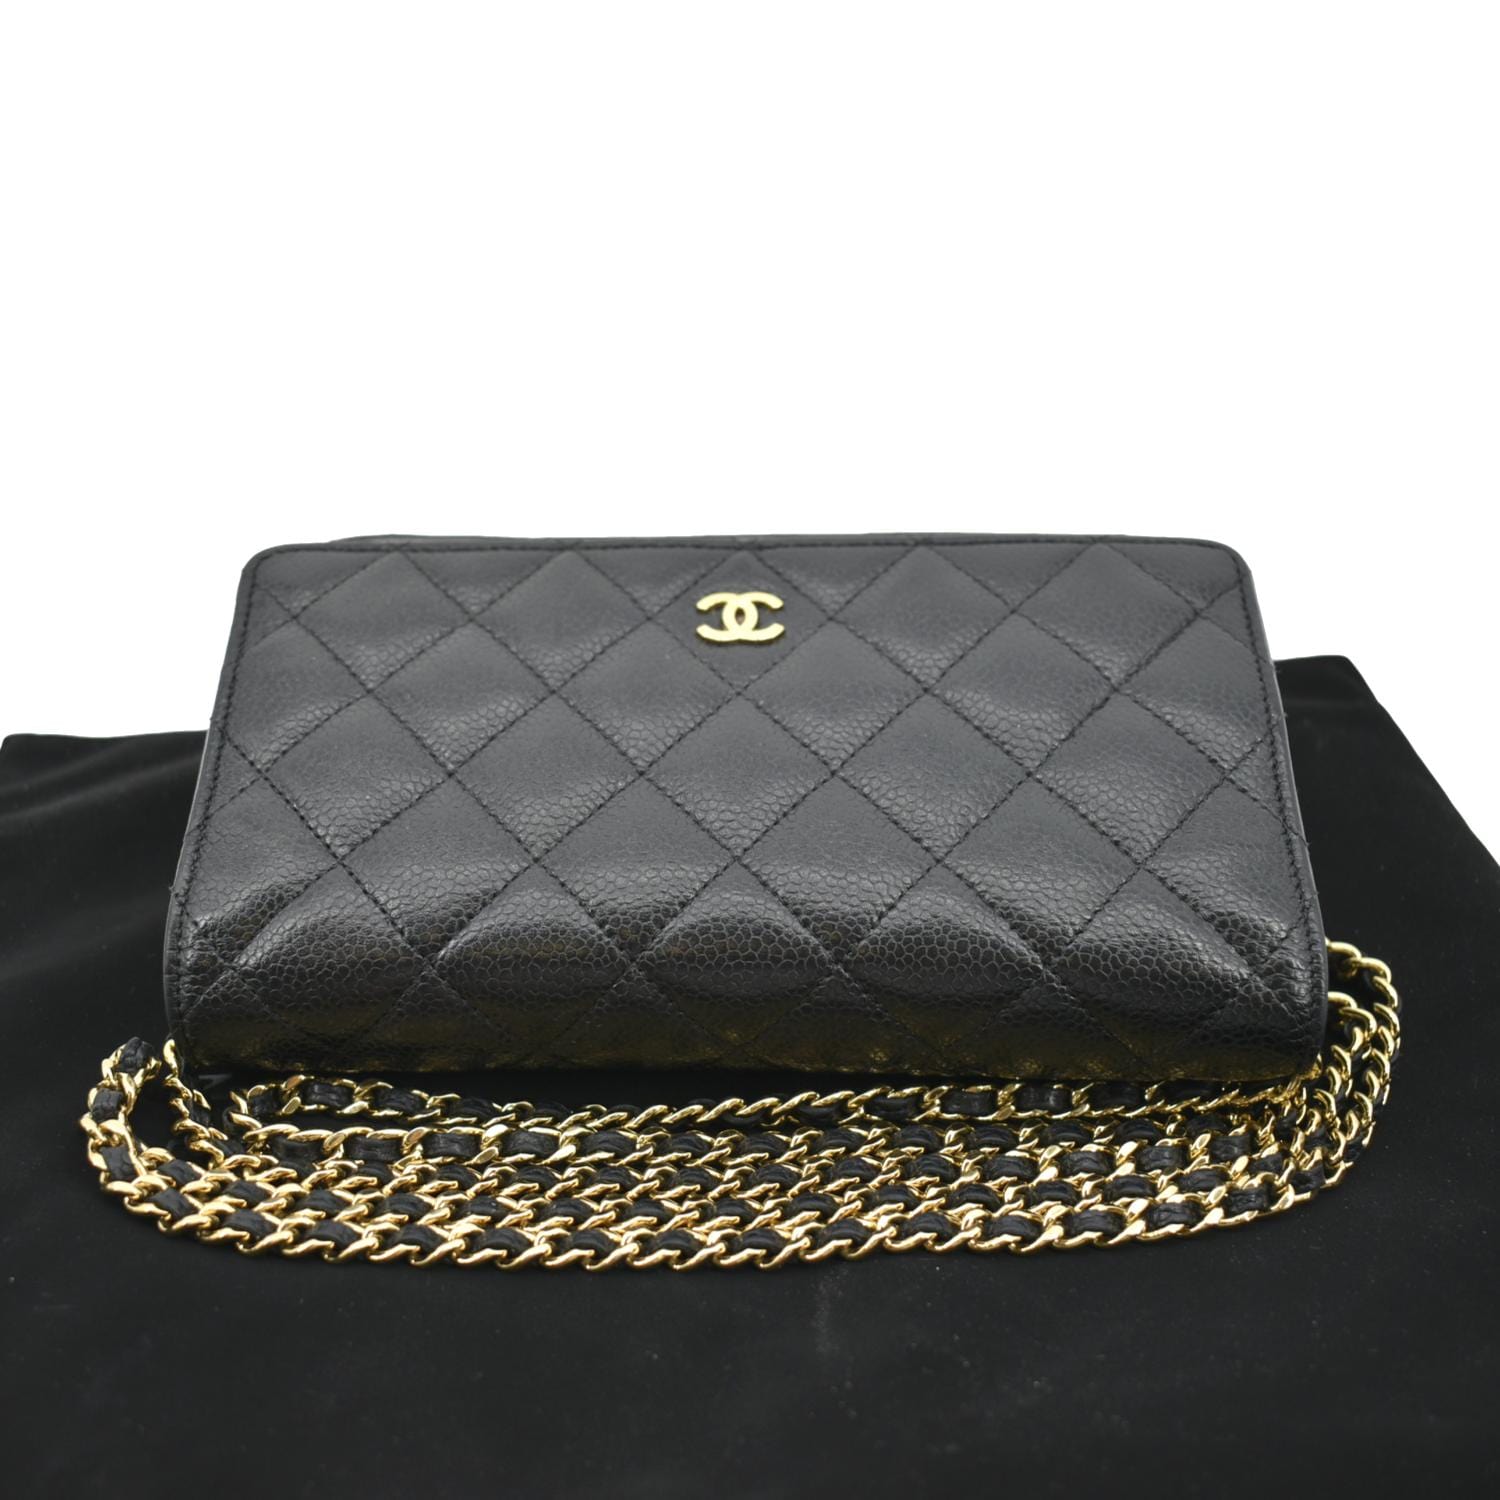 Chanel Boy Woc Caviar Leather Wallet Clutch Bag